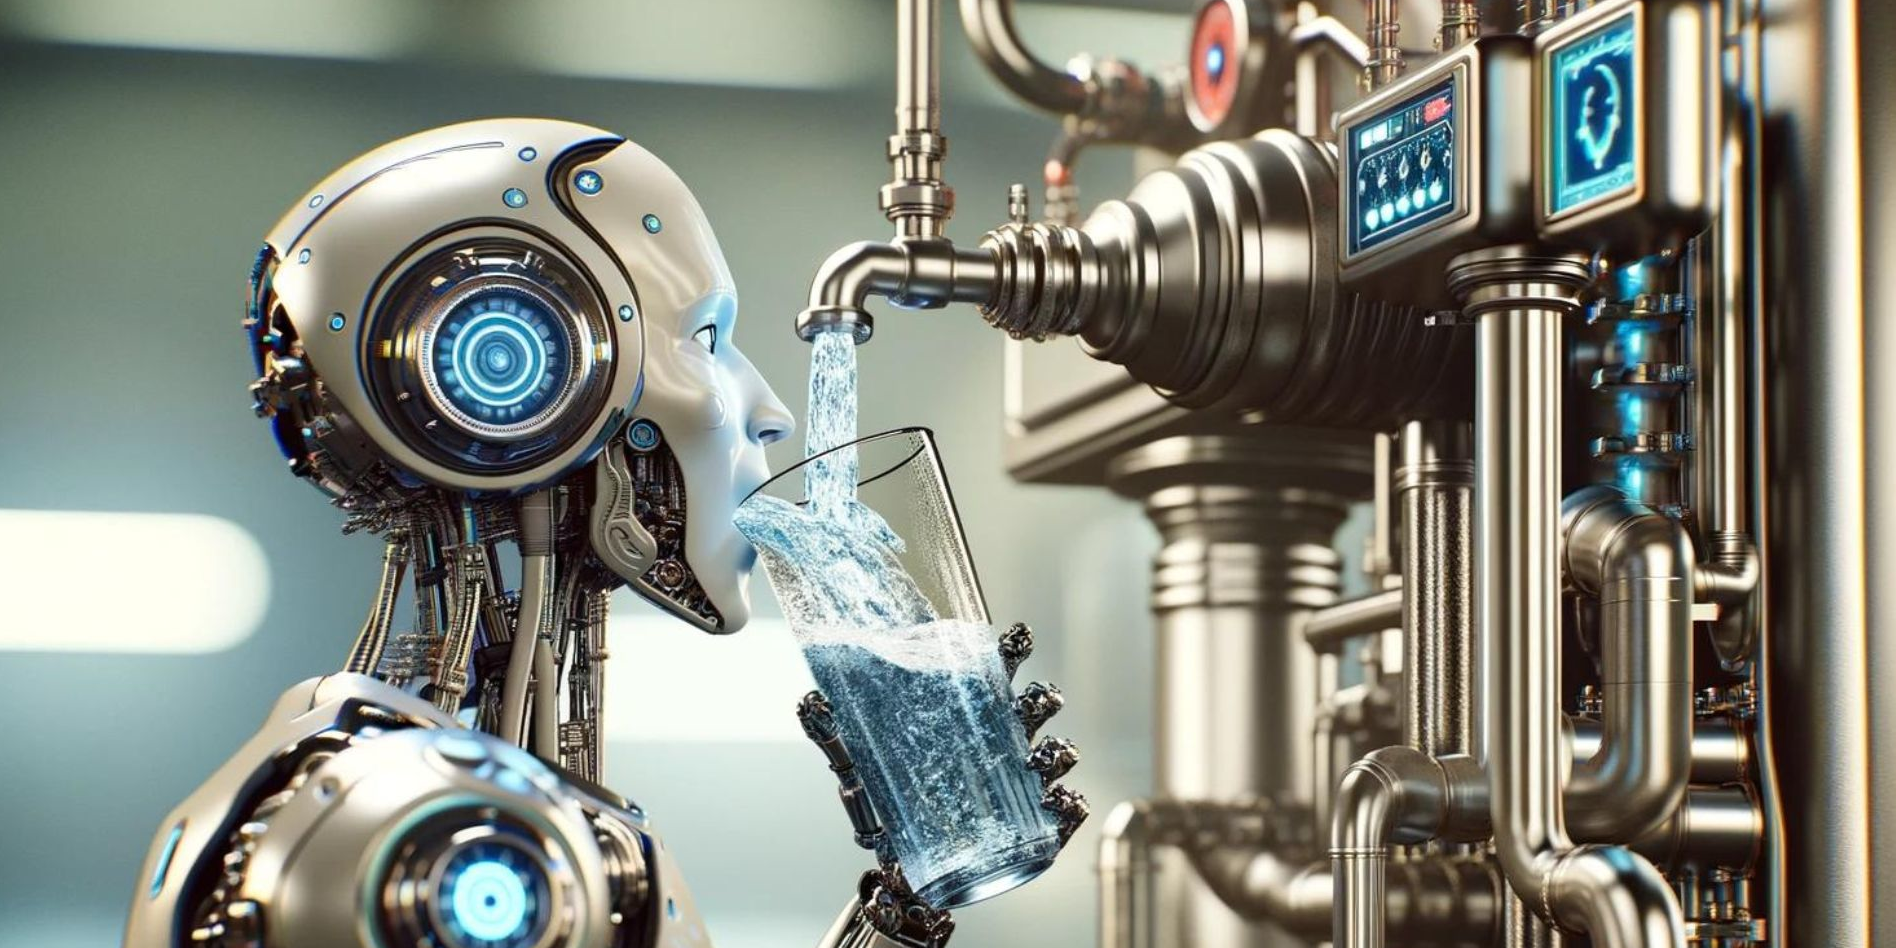 L'intelligence artificielle consomme trop d'eau : comment contrôler sa soif ?